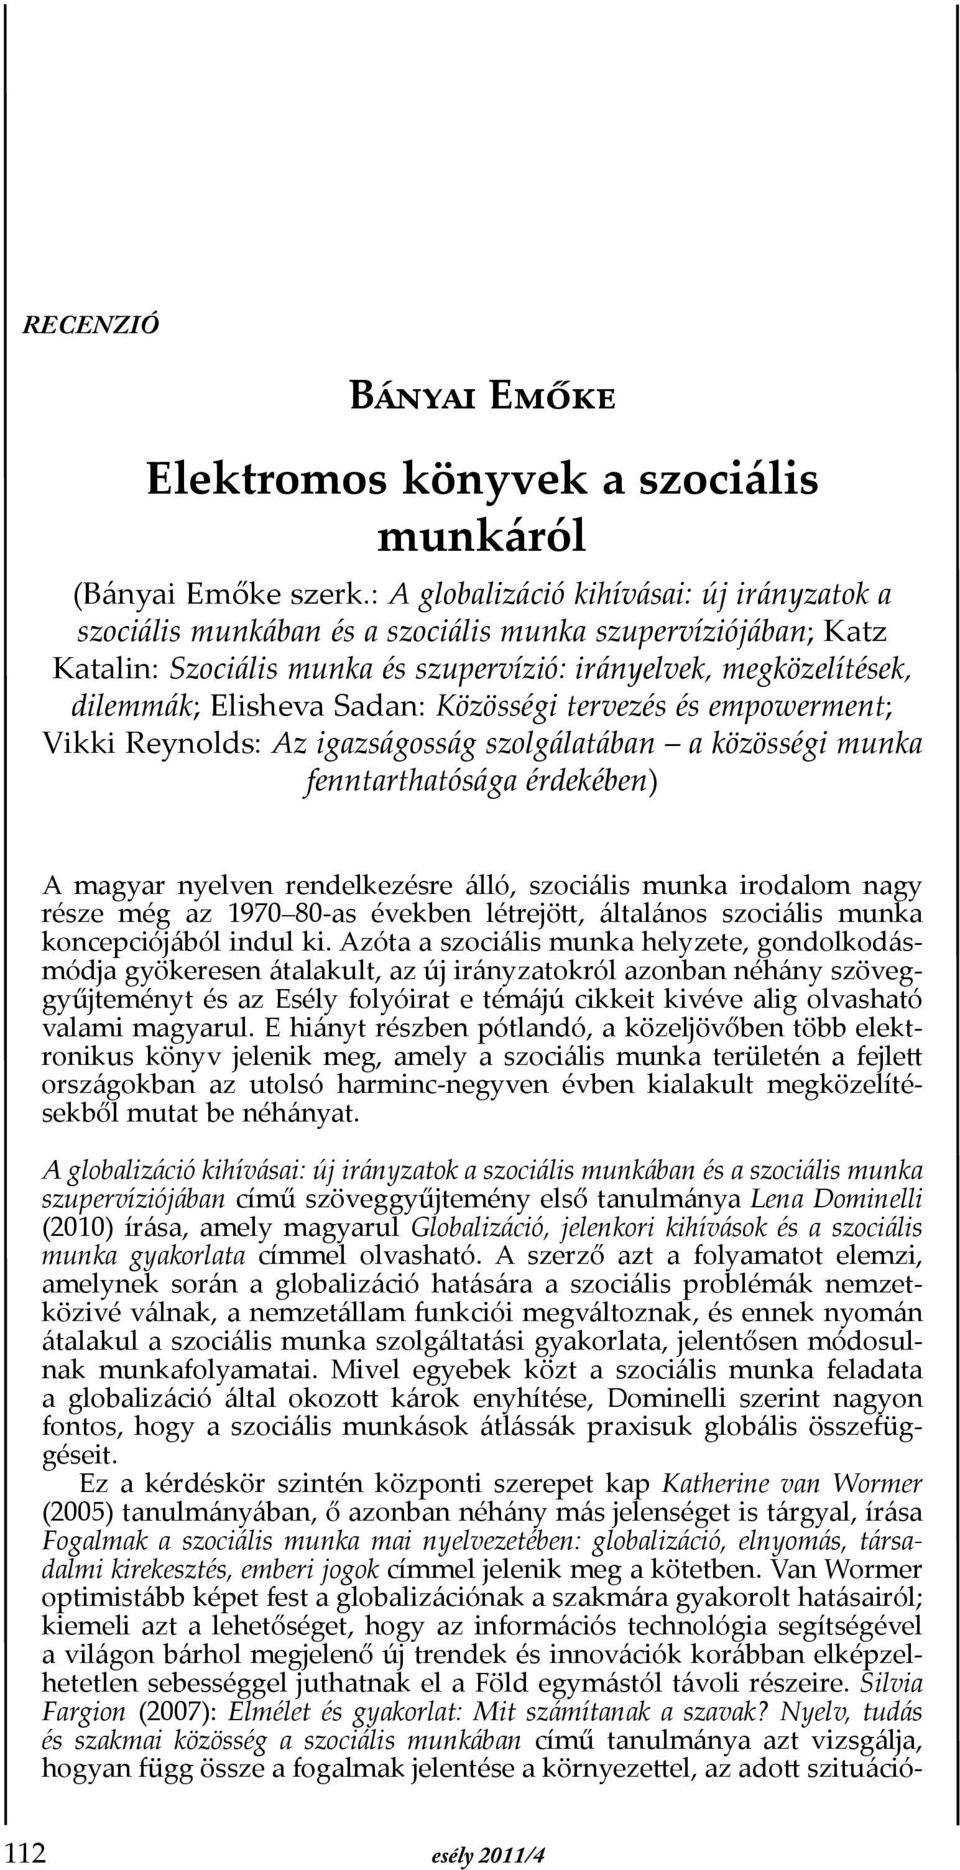 Sadan: Közösségi tervezés és empowerment; Vikki Reynolds: Az igazságosság szolgálatában a közösségi munka fenntarthatósága érdekében) A magyar nyelven rendelkezésre álló, szociális munka irodalom